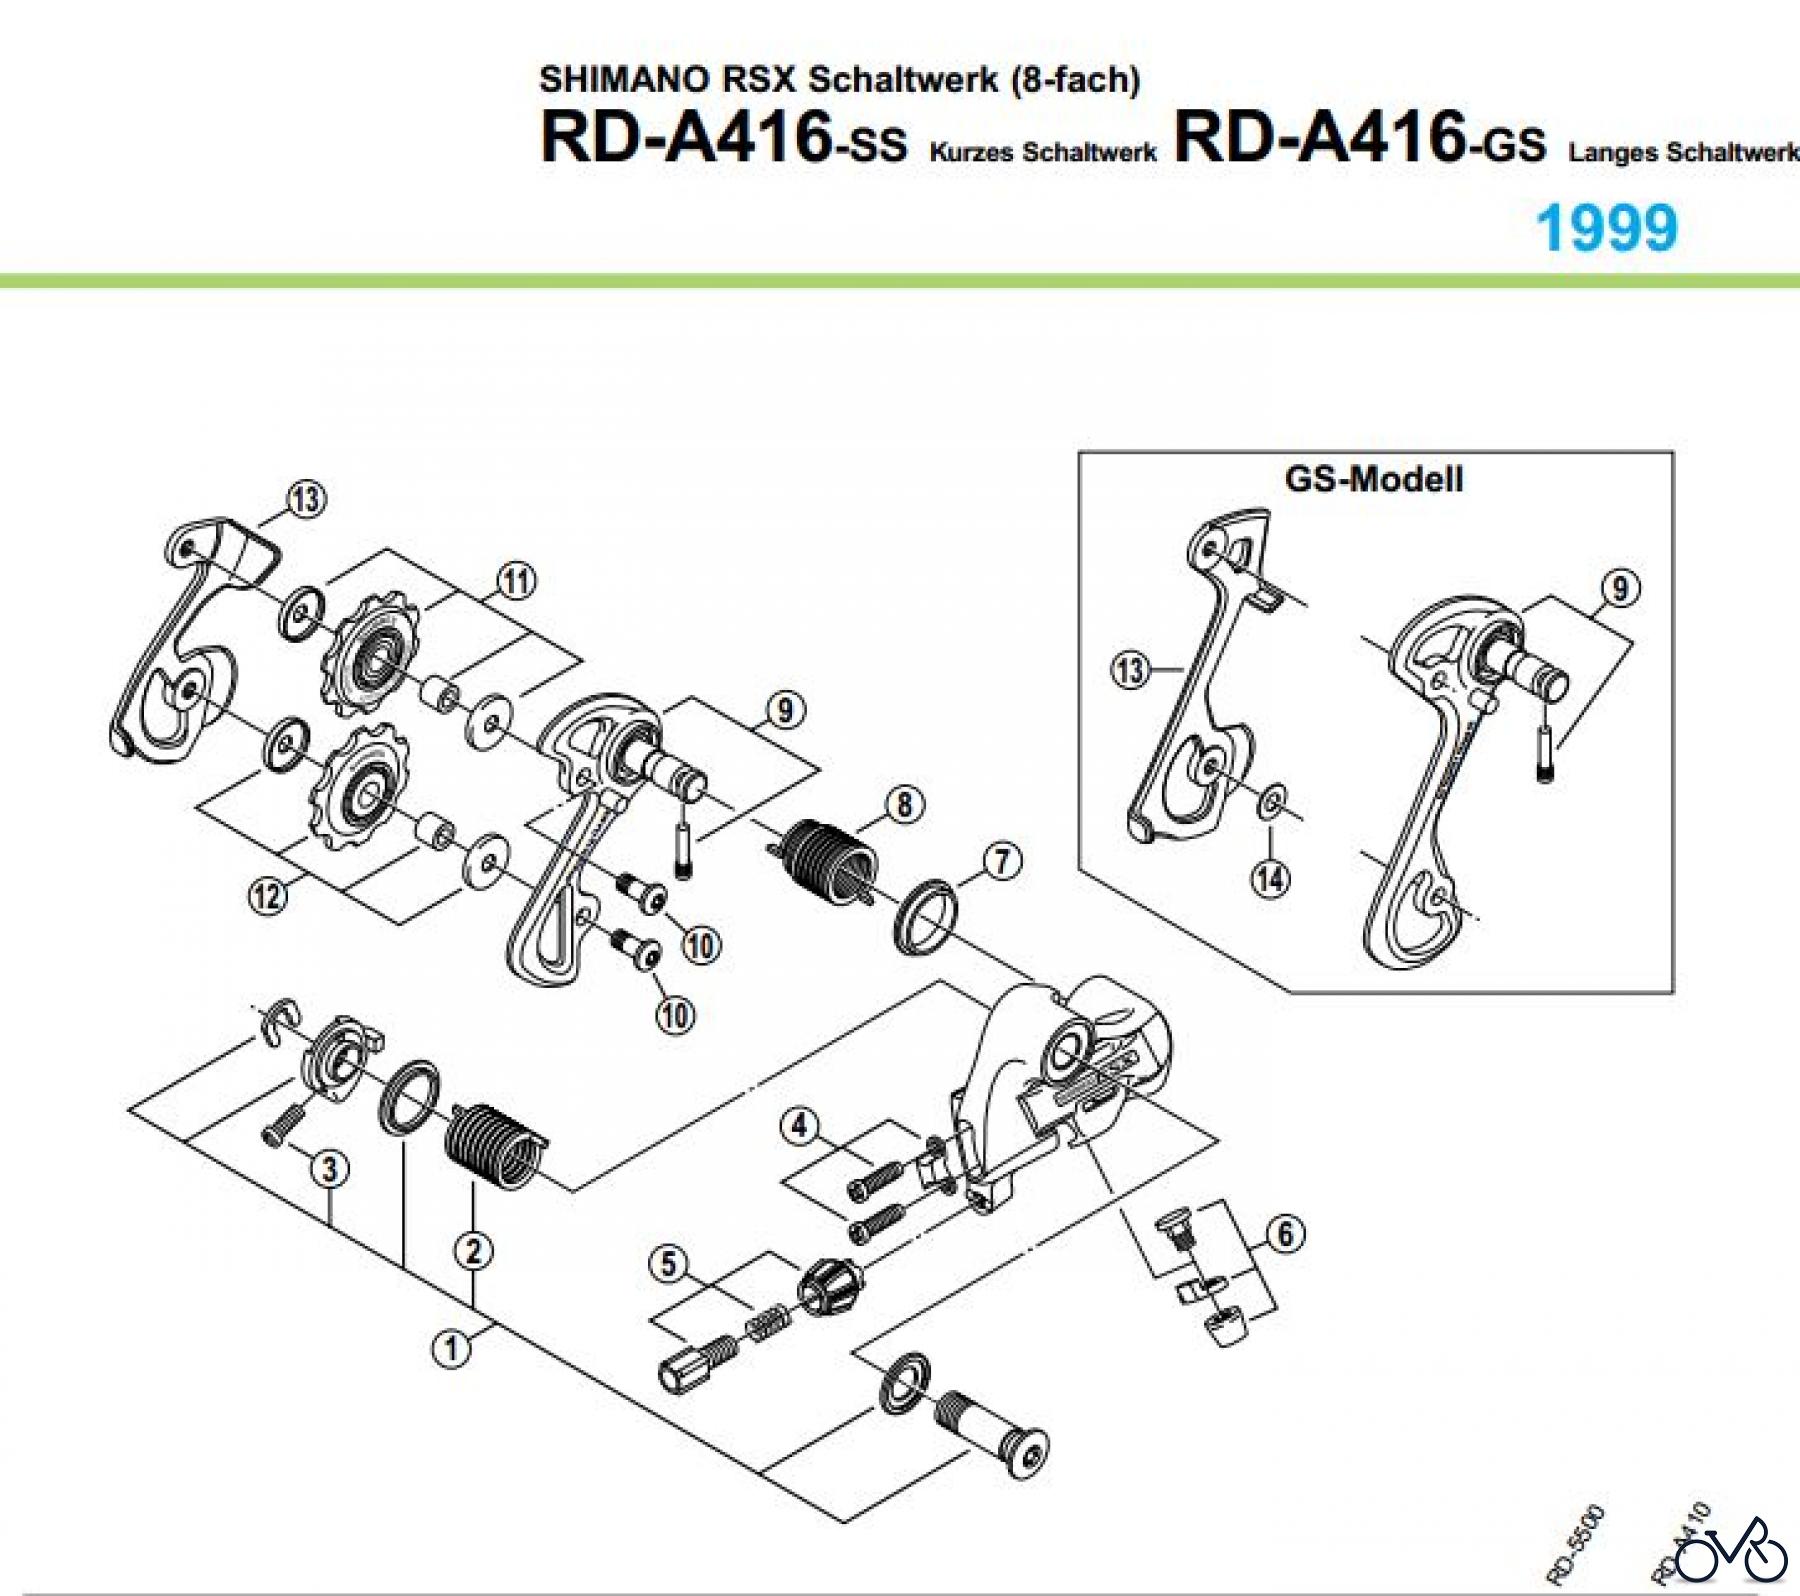  Shimano RD Rear Derailleur - Schaltwerk RD-A416-99